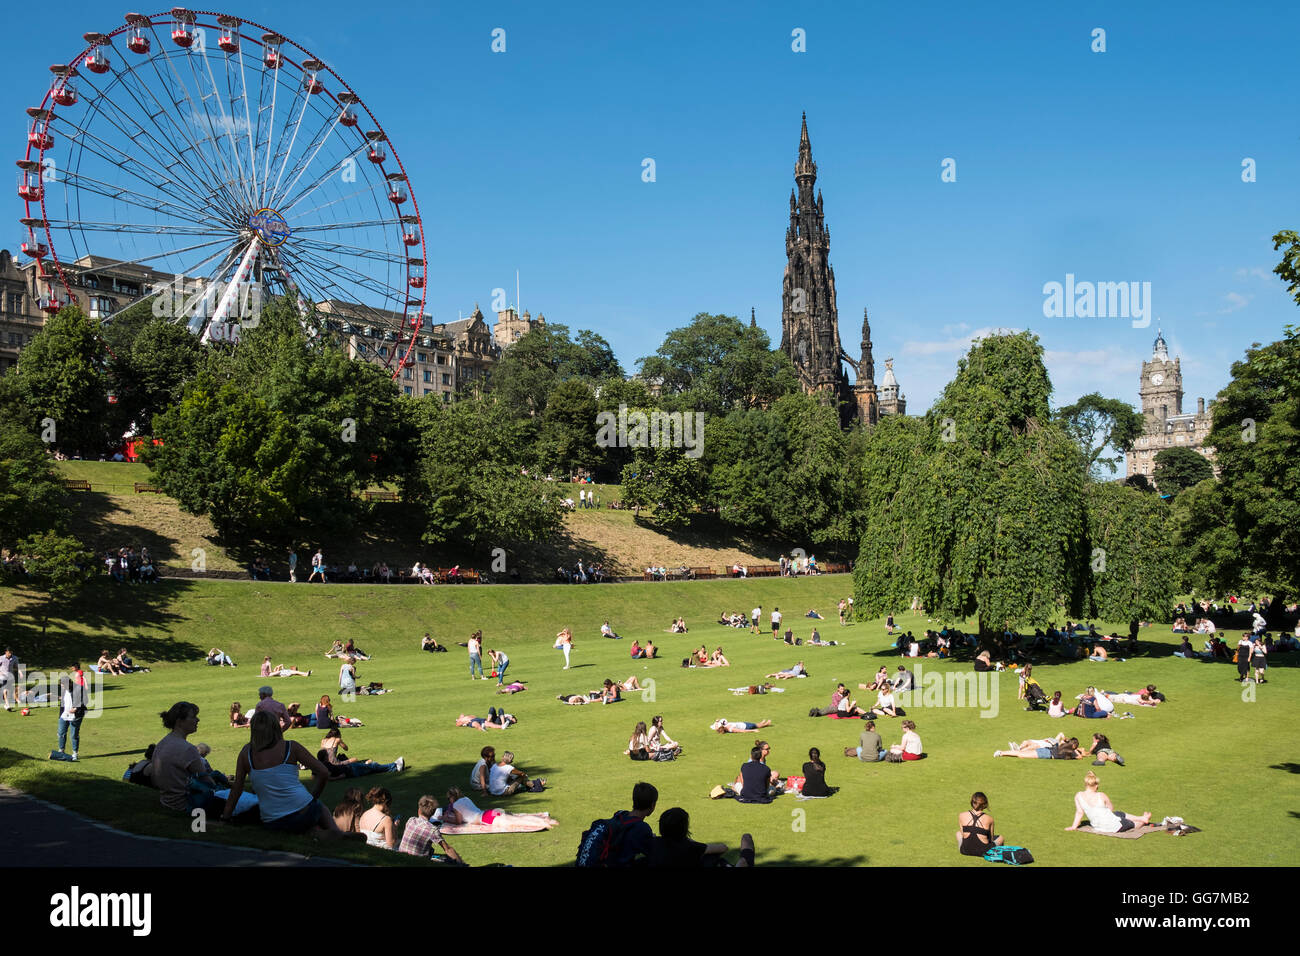 Clima caluroso de verano atrae a mucha gente en los jardines de Princes Street en Edimburgo, Escocia, Reino Unido Foto de stock